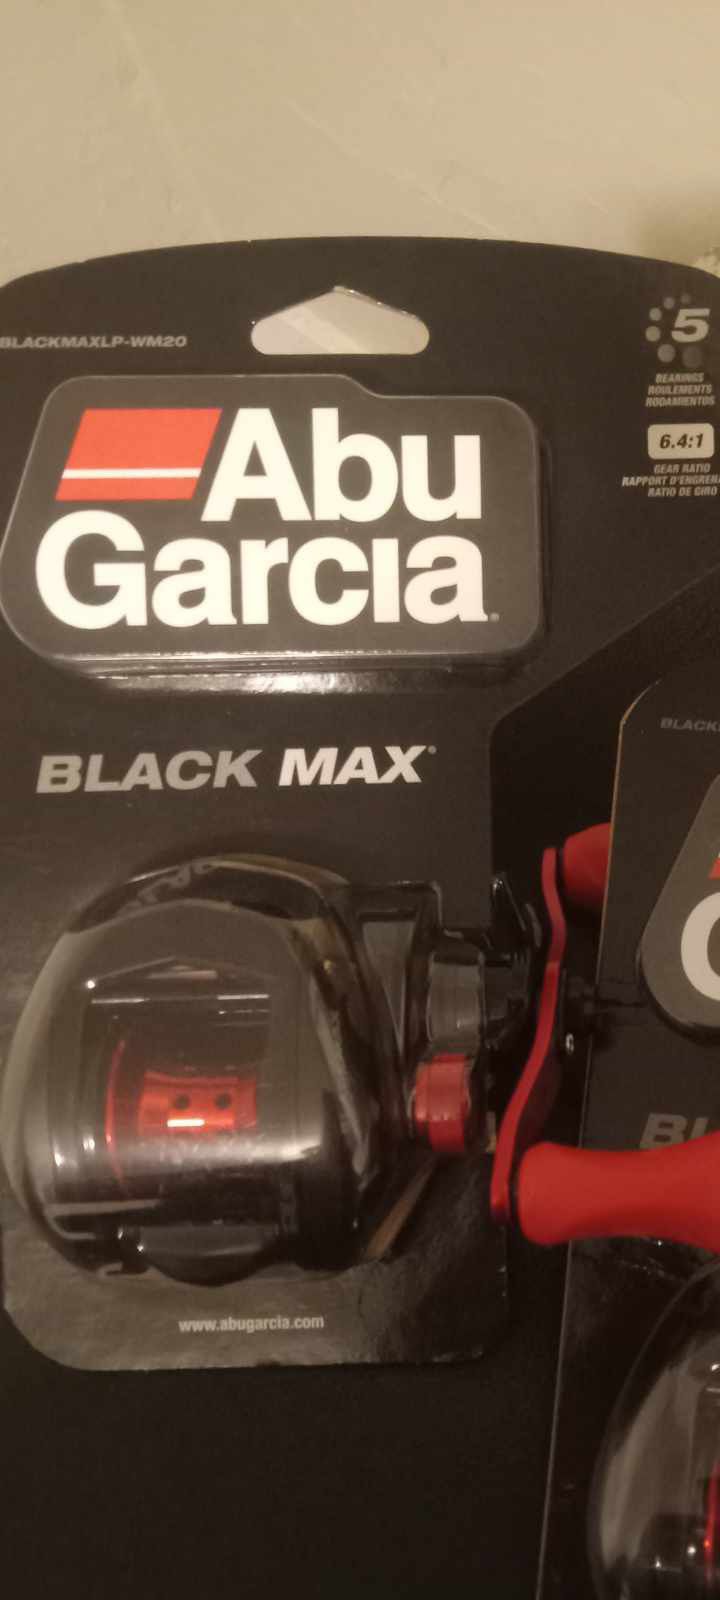 Abu Garcia Black Max